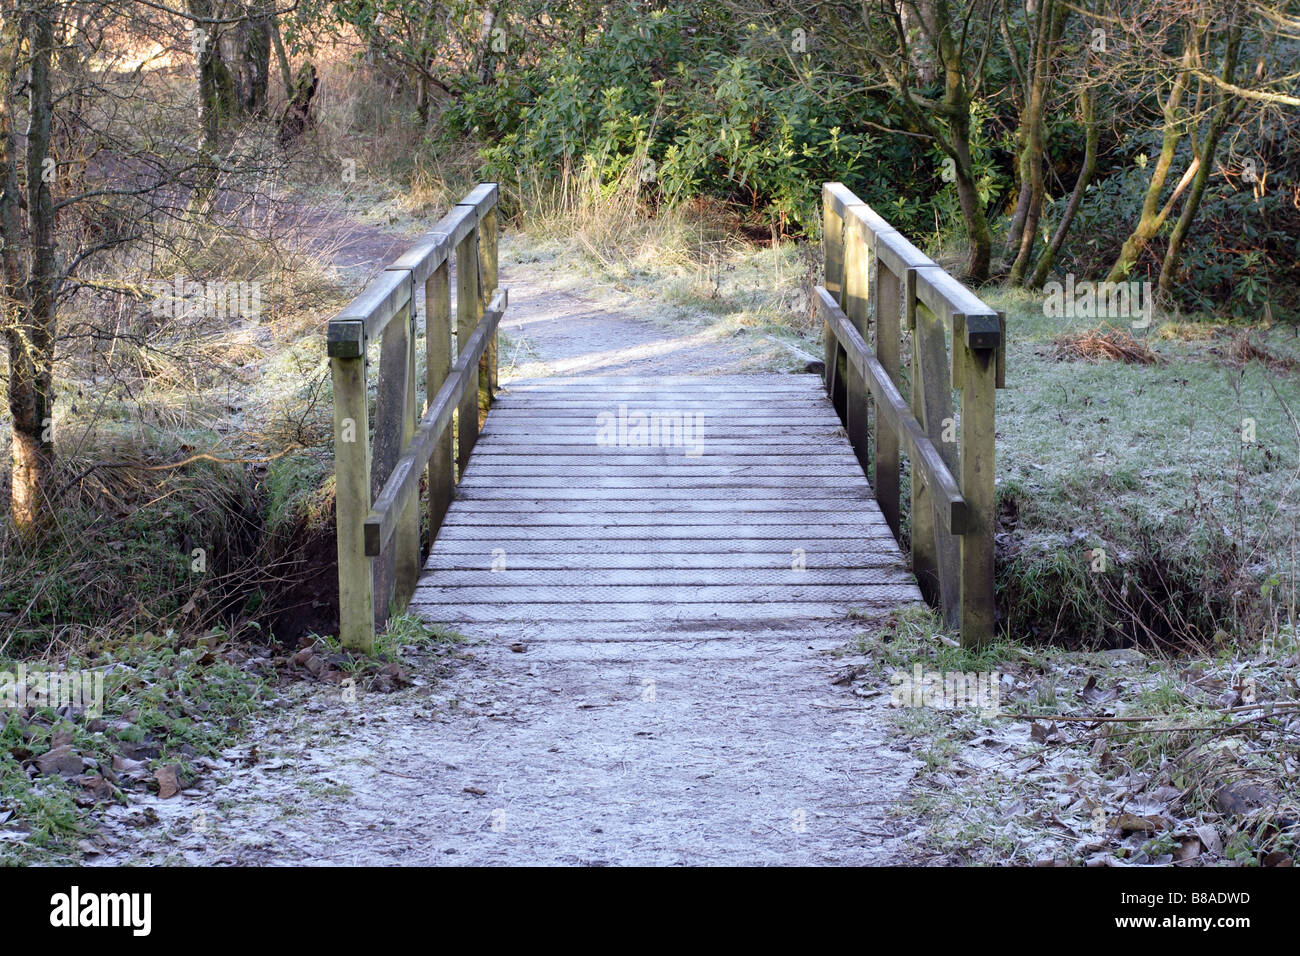 Percorso Semple Trail su un ponte pedonale in legno ghiacciato in inverno, Parkhill Woods, Clyde Muirshiel Regional Park, Lochwinnoch, Renfrewshire, Scozia, Regno Unito Foto Stock